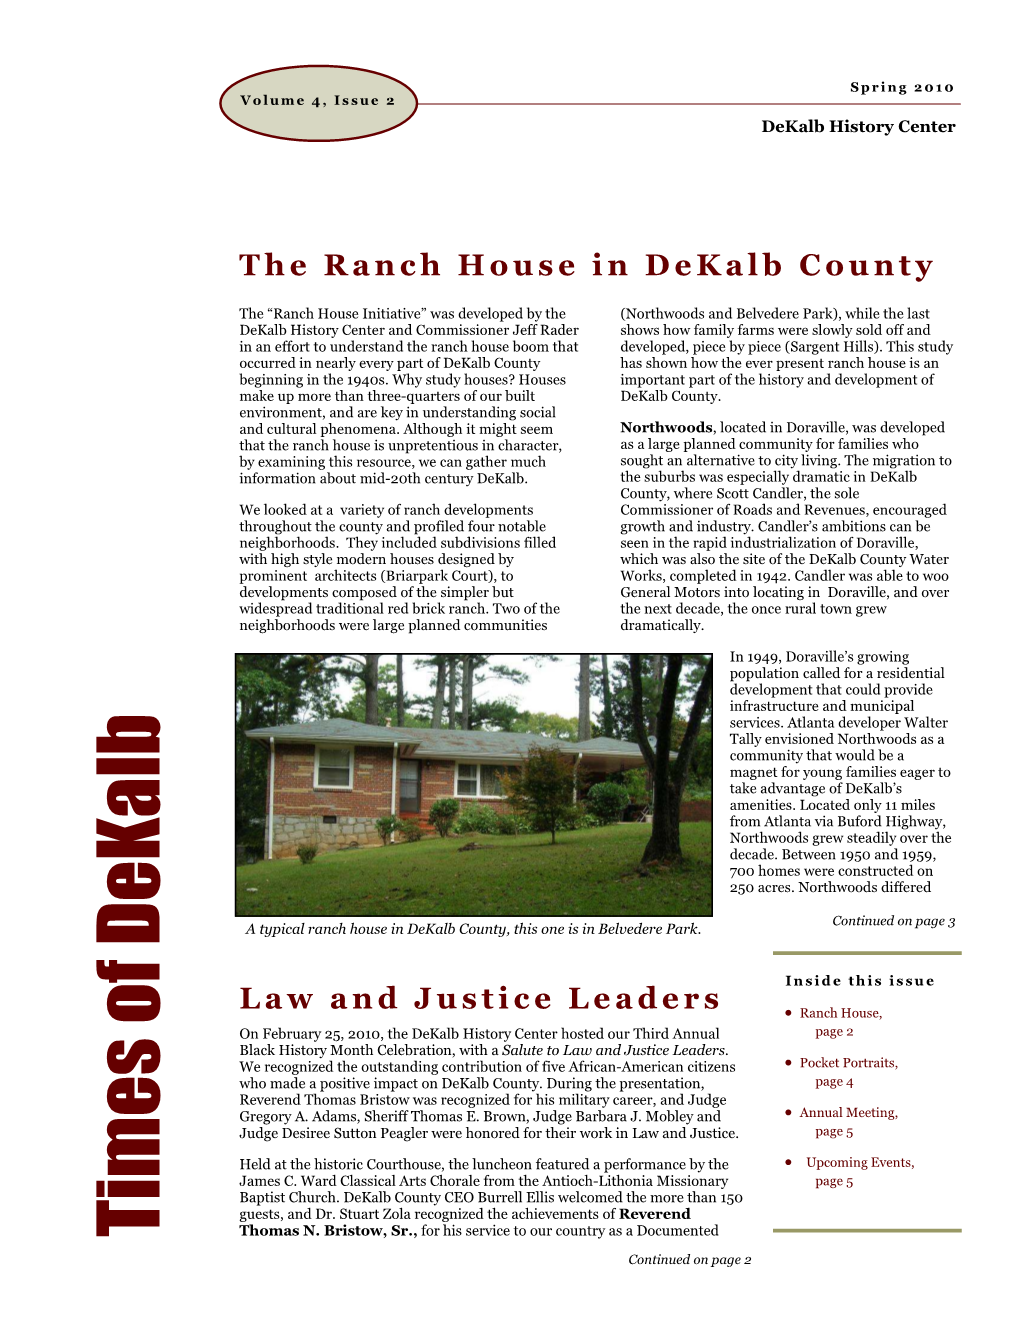 Dekalb History Center Newsletter: 2010 Spring